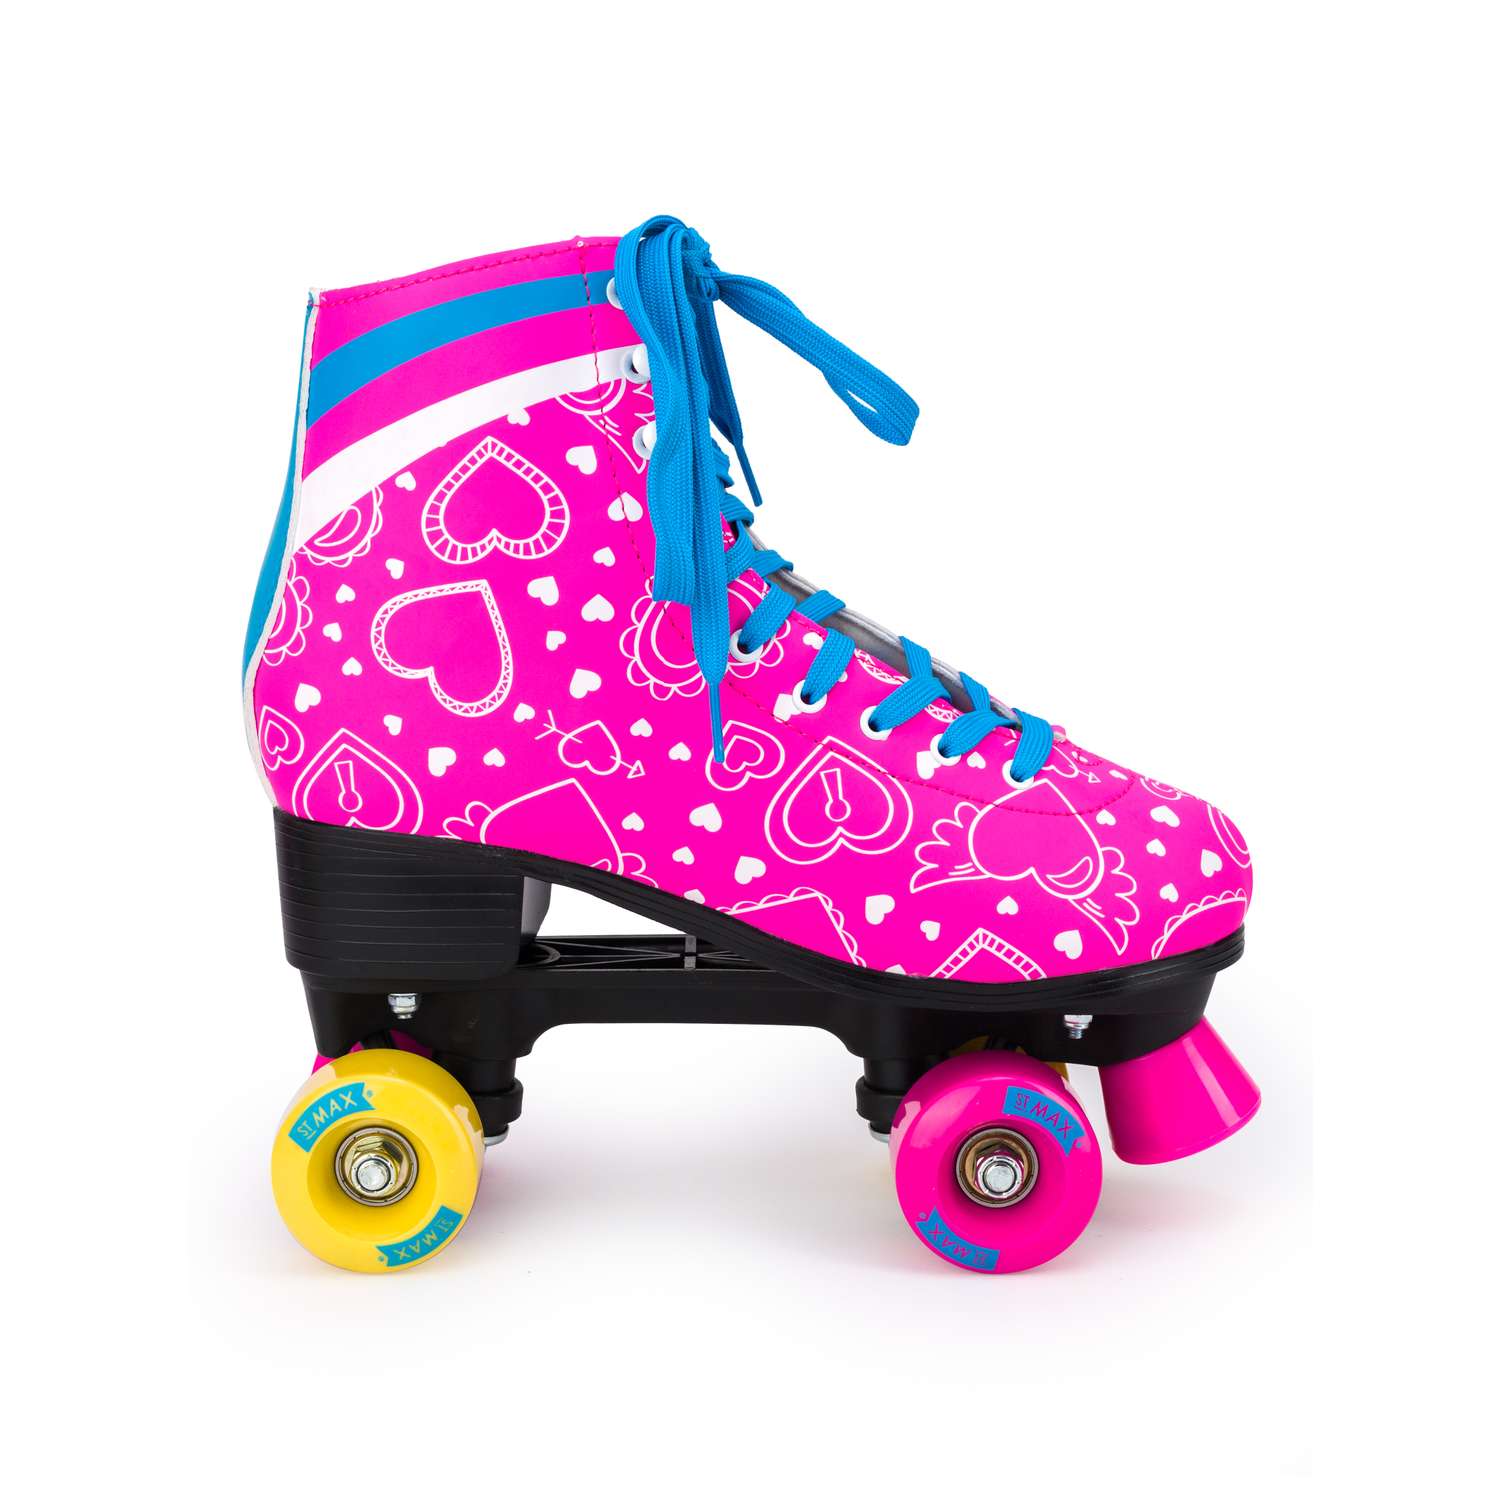 Роликовые коньки SXRide Roller skate YXSKT04BLPN36 цвет розовые с белыми сердечкам размер 36 - фото 2